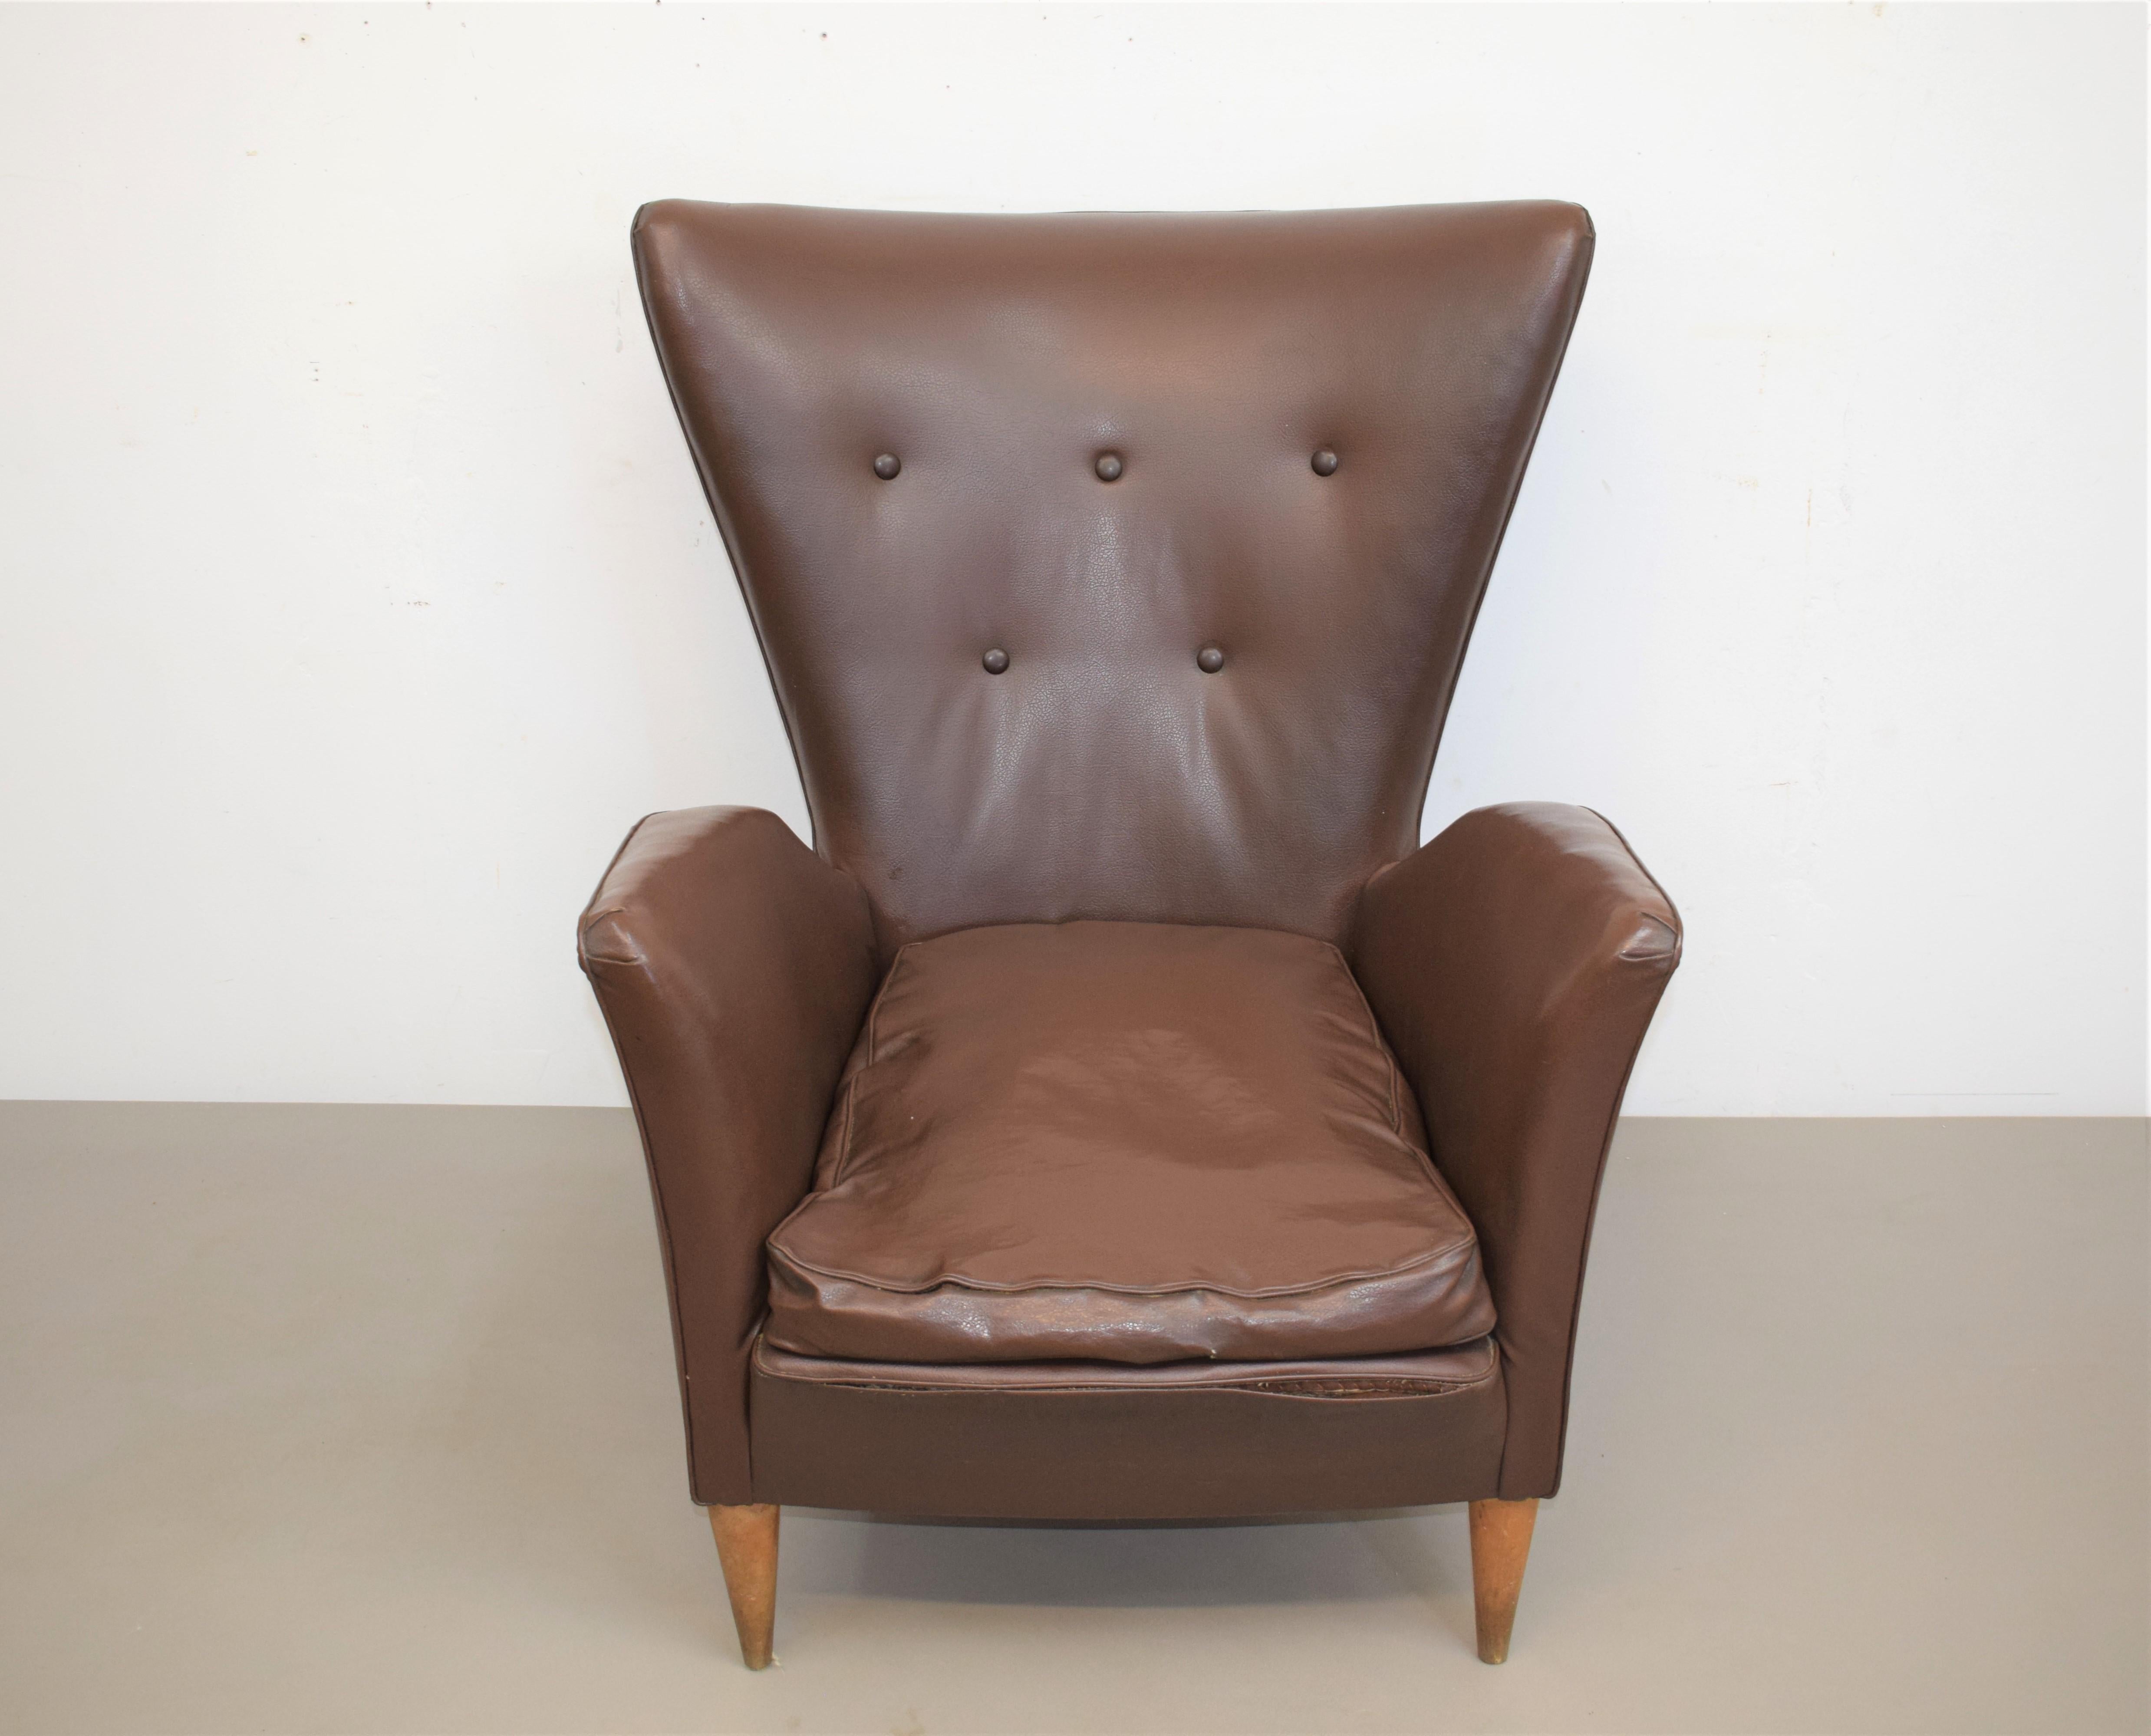 Italienischer Sessel, Stil Gio Ponti, 1950er Jahre.
Abmessungen: H=84 cm; B=74 cm; T= 71 cm; Sitzhöhe = 35 cm.